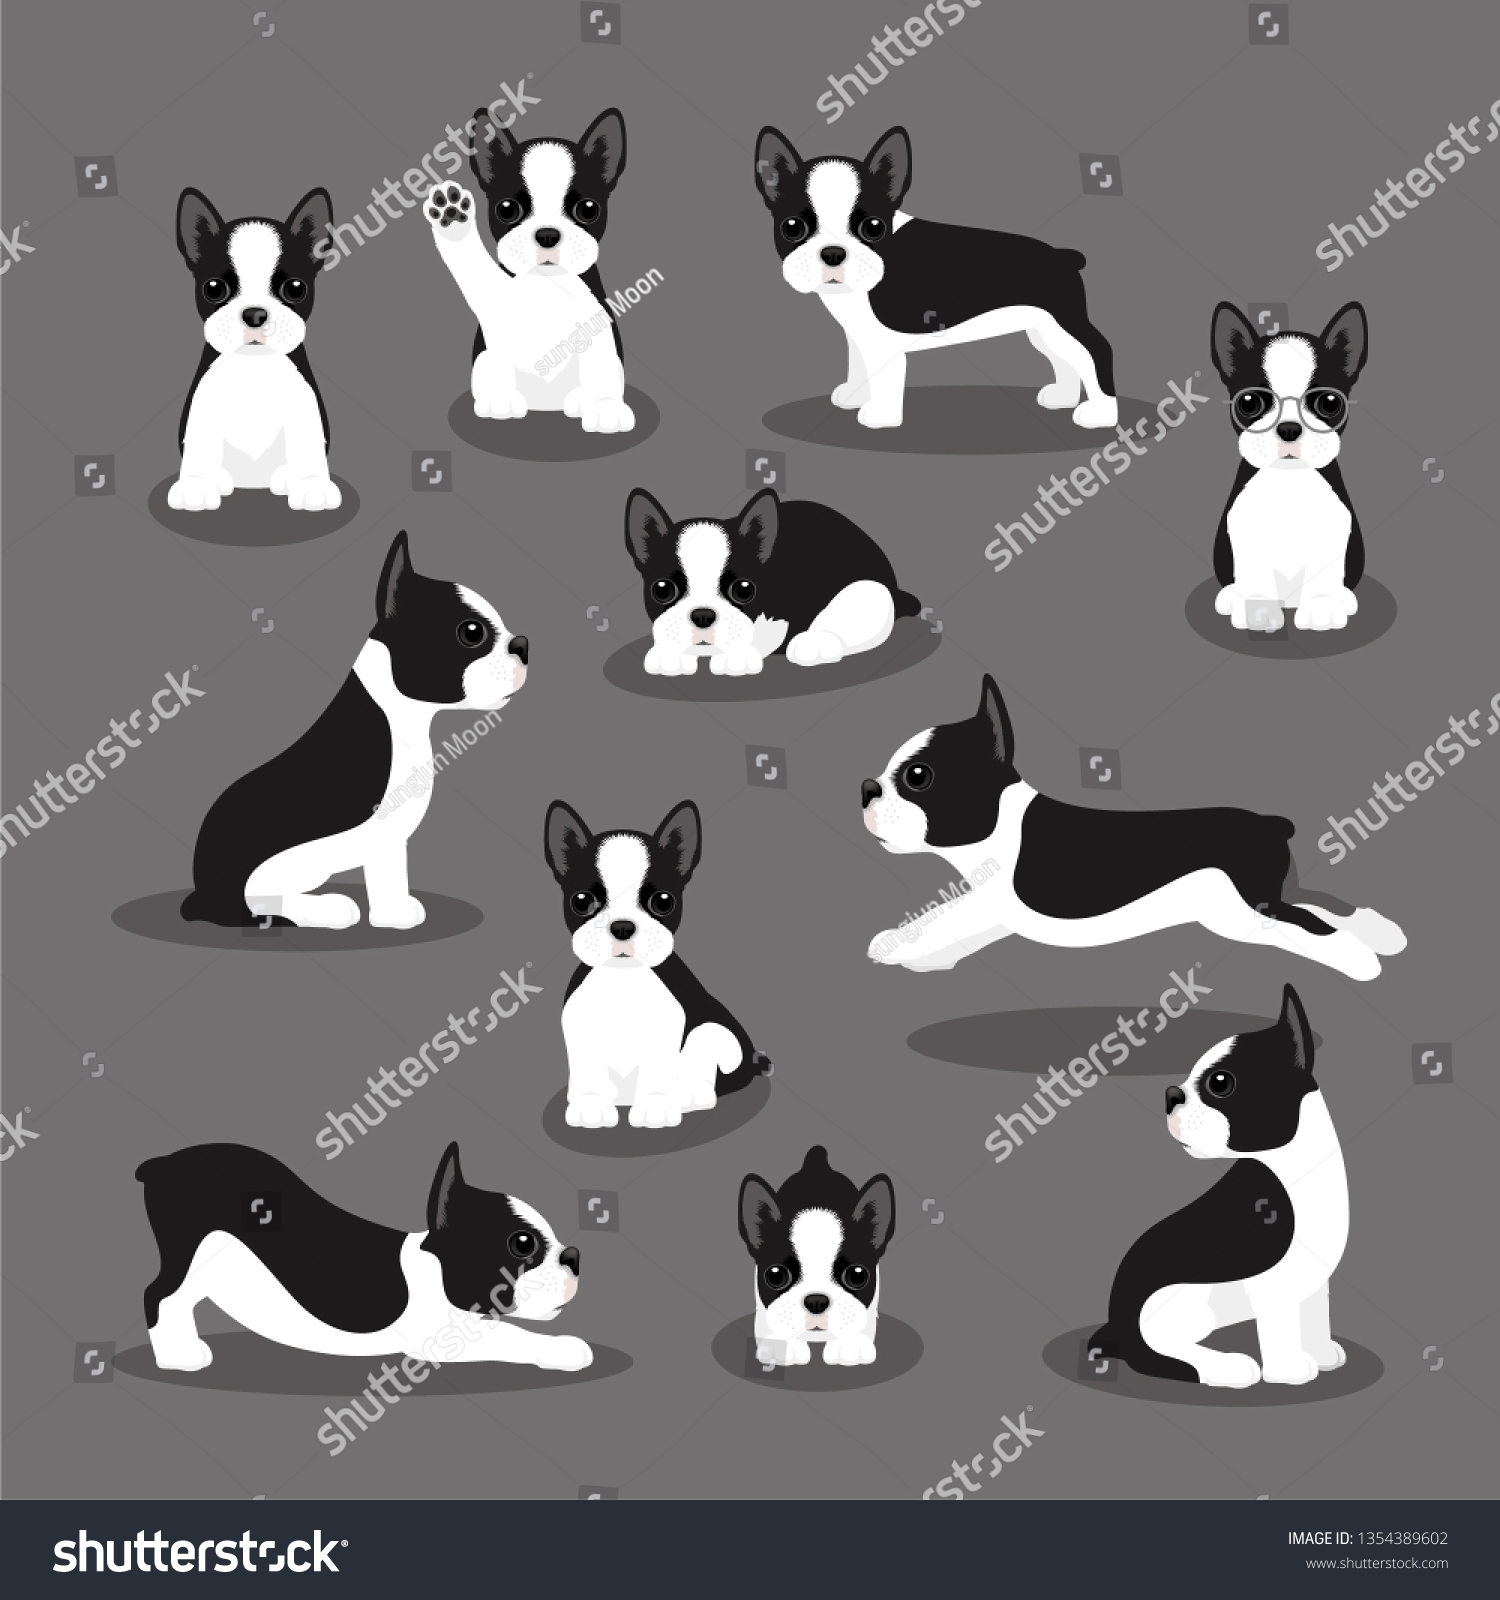 異なるポーズのボストンテリア犬のベクターイラストセット 現代のフラットスタイルのかわいい子犬 動物のキャラクタデザインを背景に分離 のベクター画像素材 ロイヤリティフリー Shutterstock